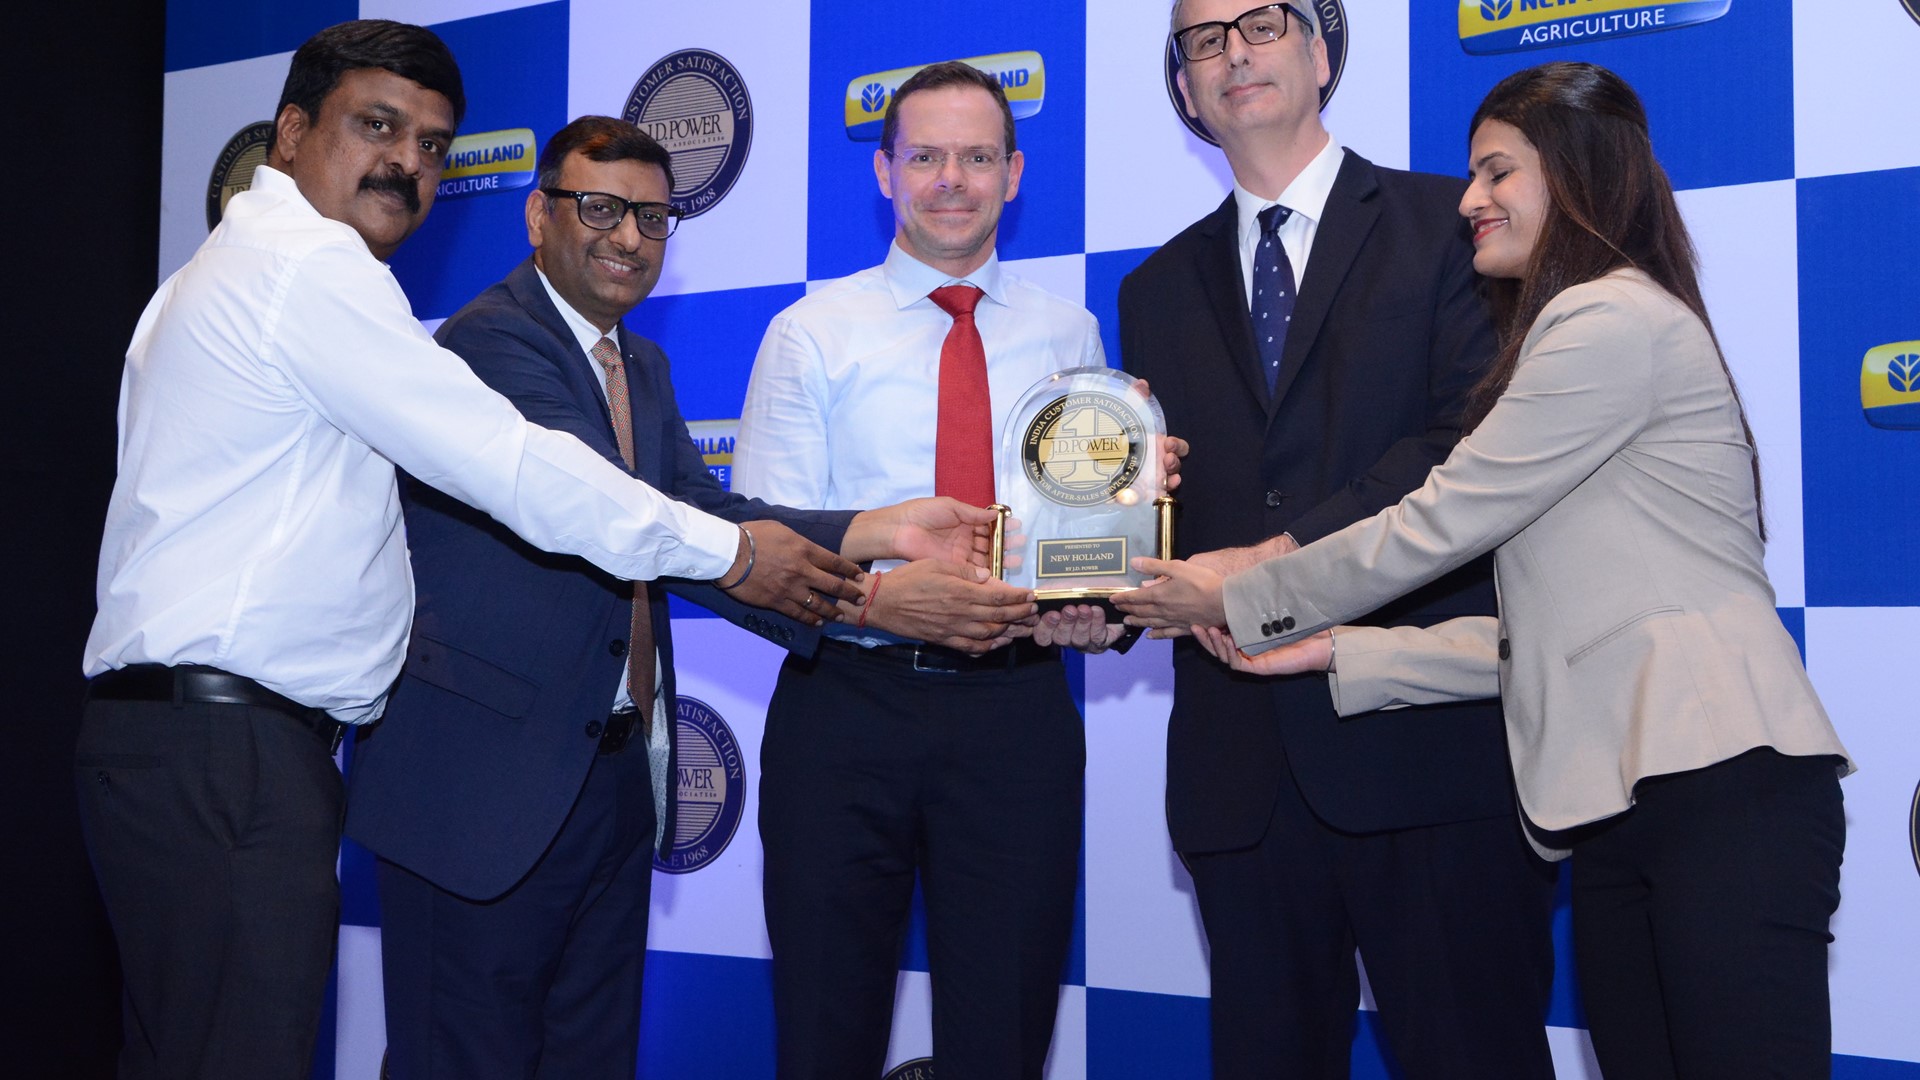 Senthil Kumar, Bimal Kumar and Gabriele Lucano receiving an award from J.D. Power Officials